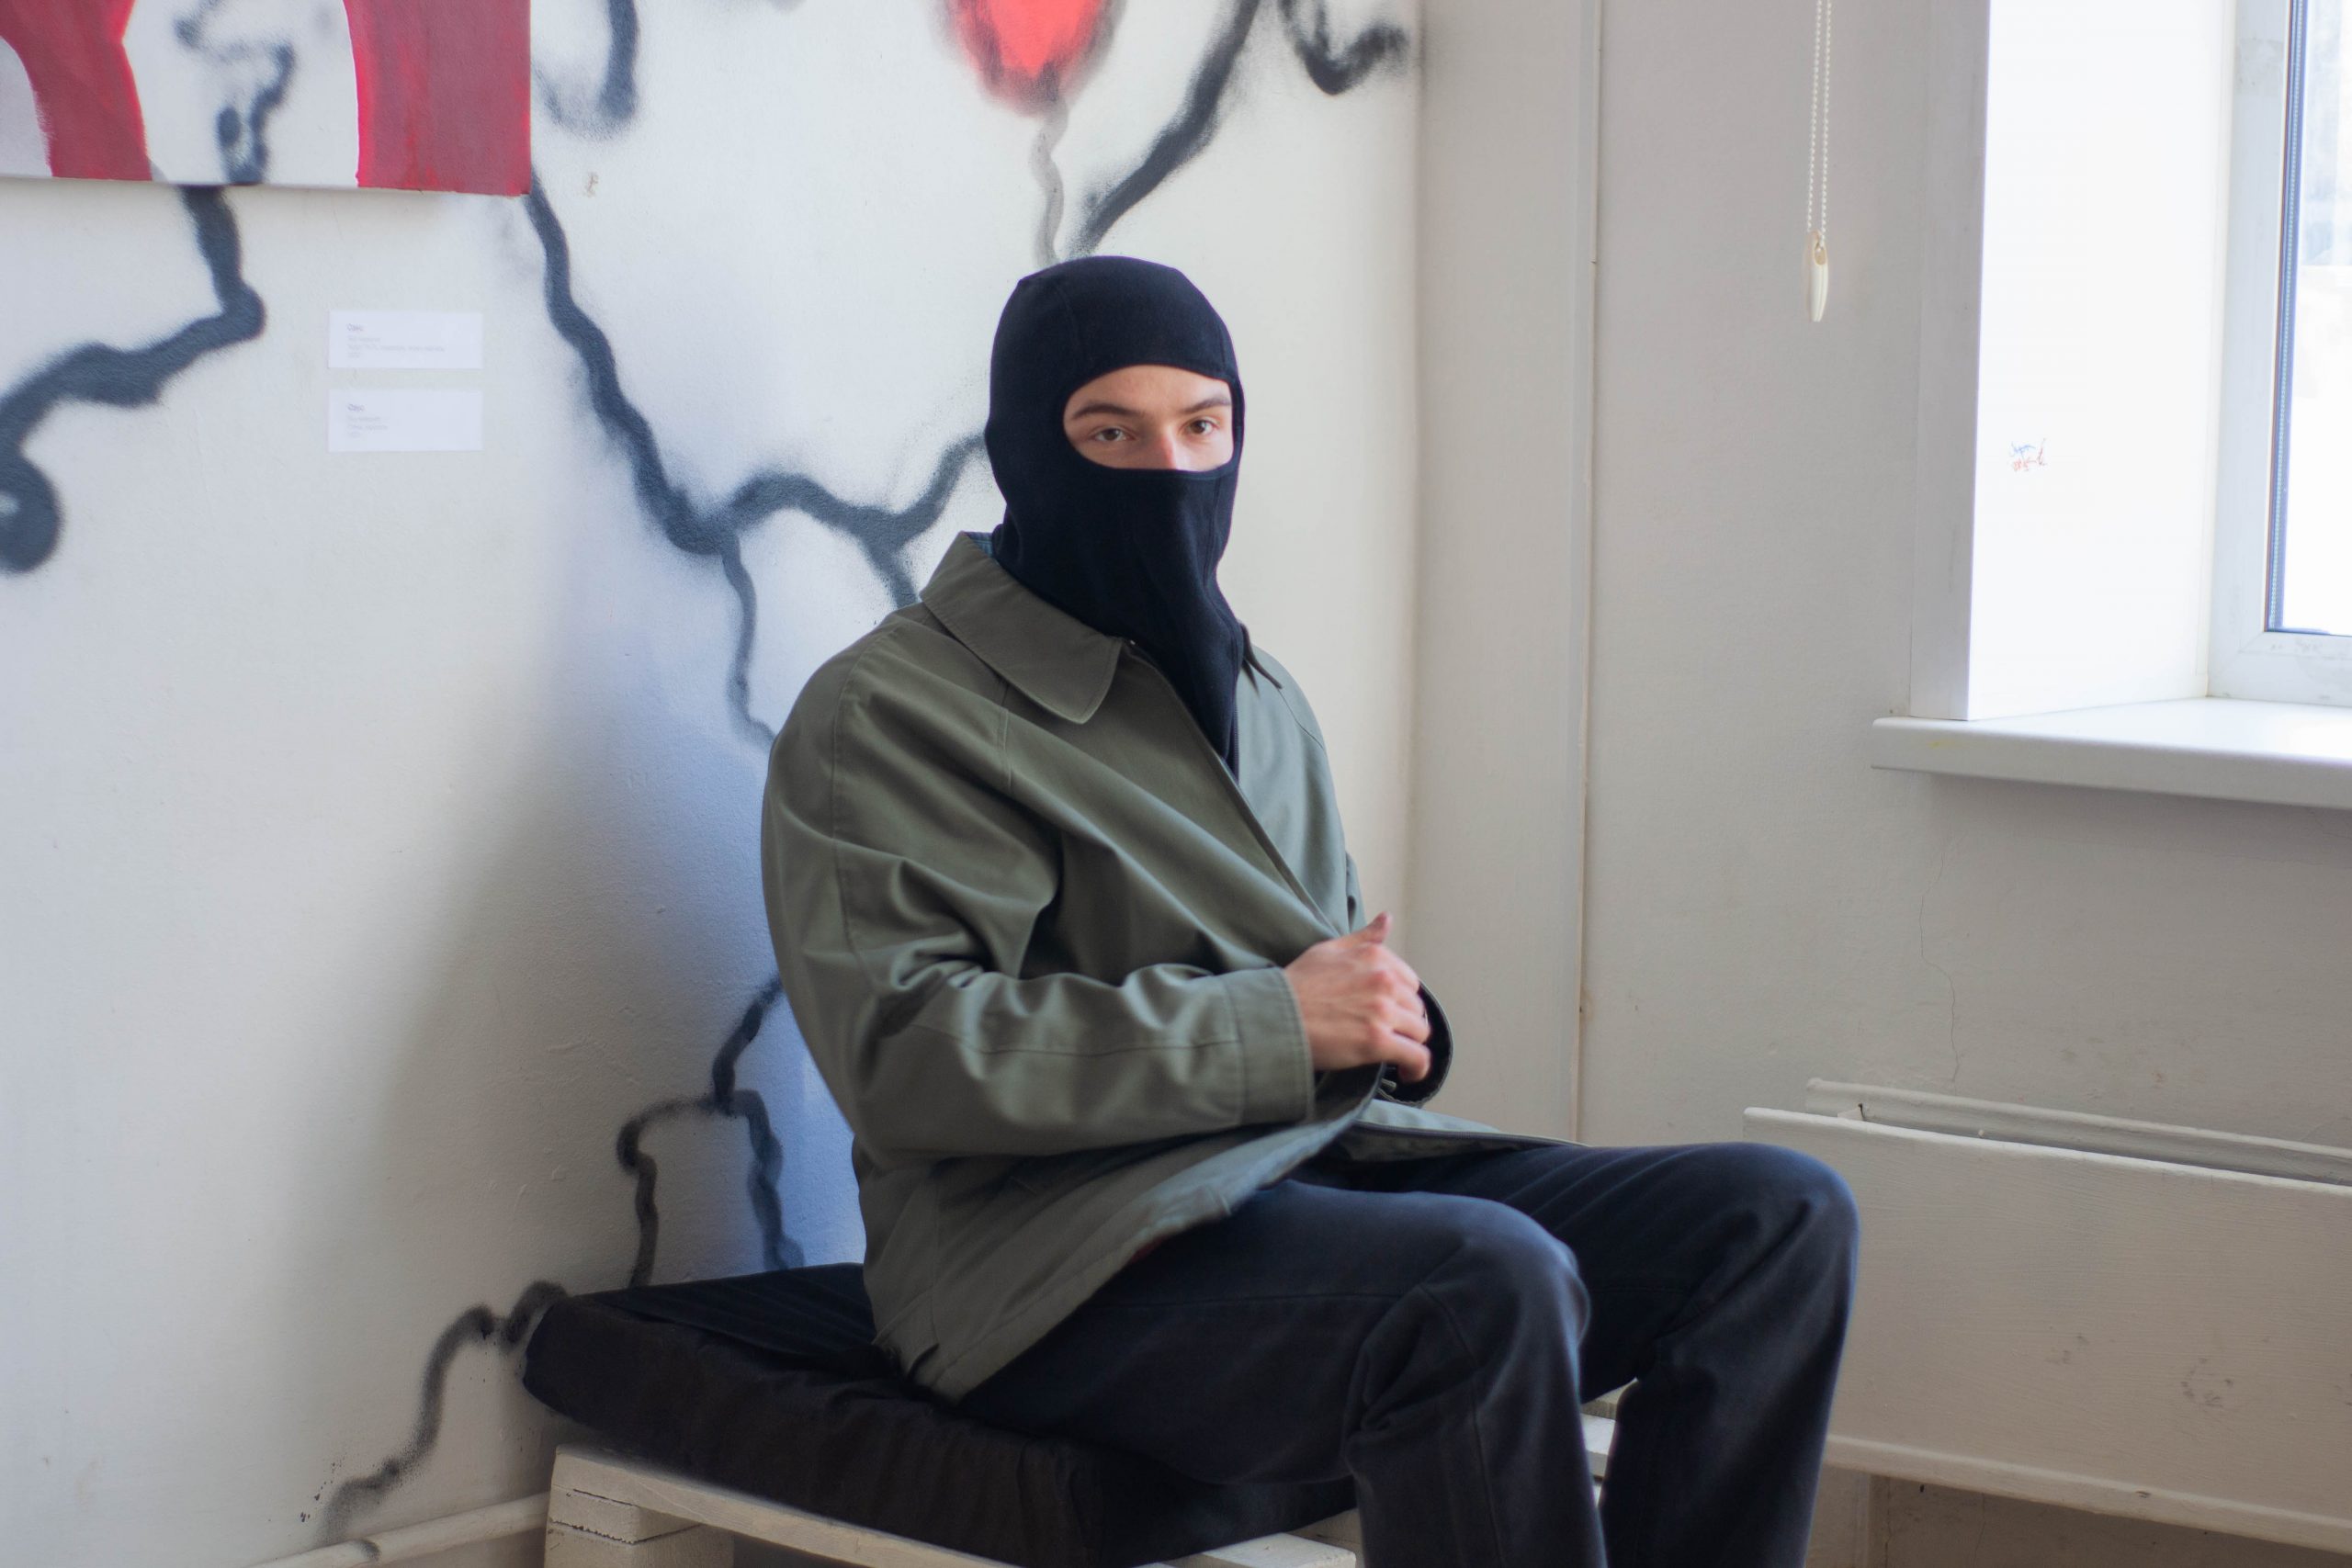 Художники расписали стены и двери на выставке в Тольятти